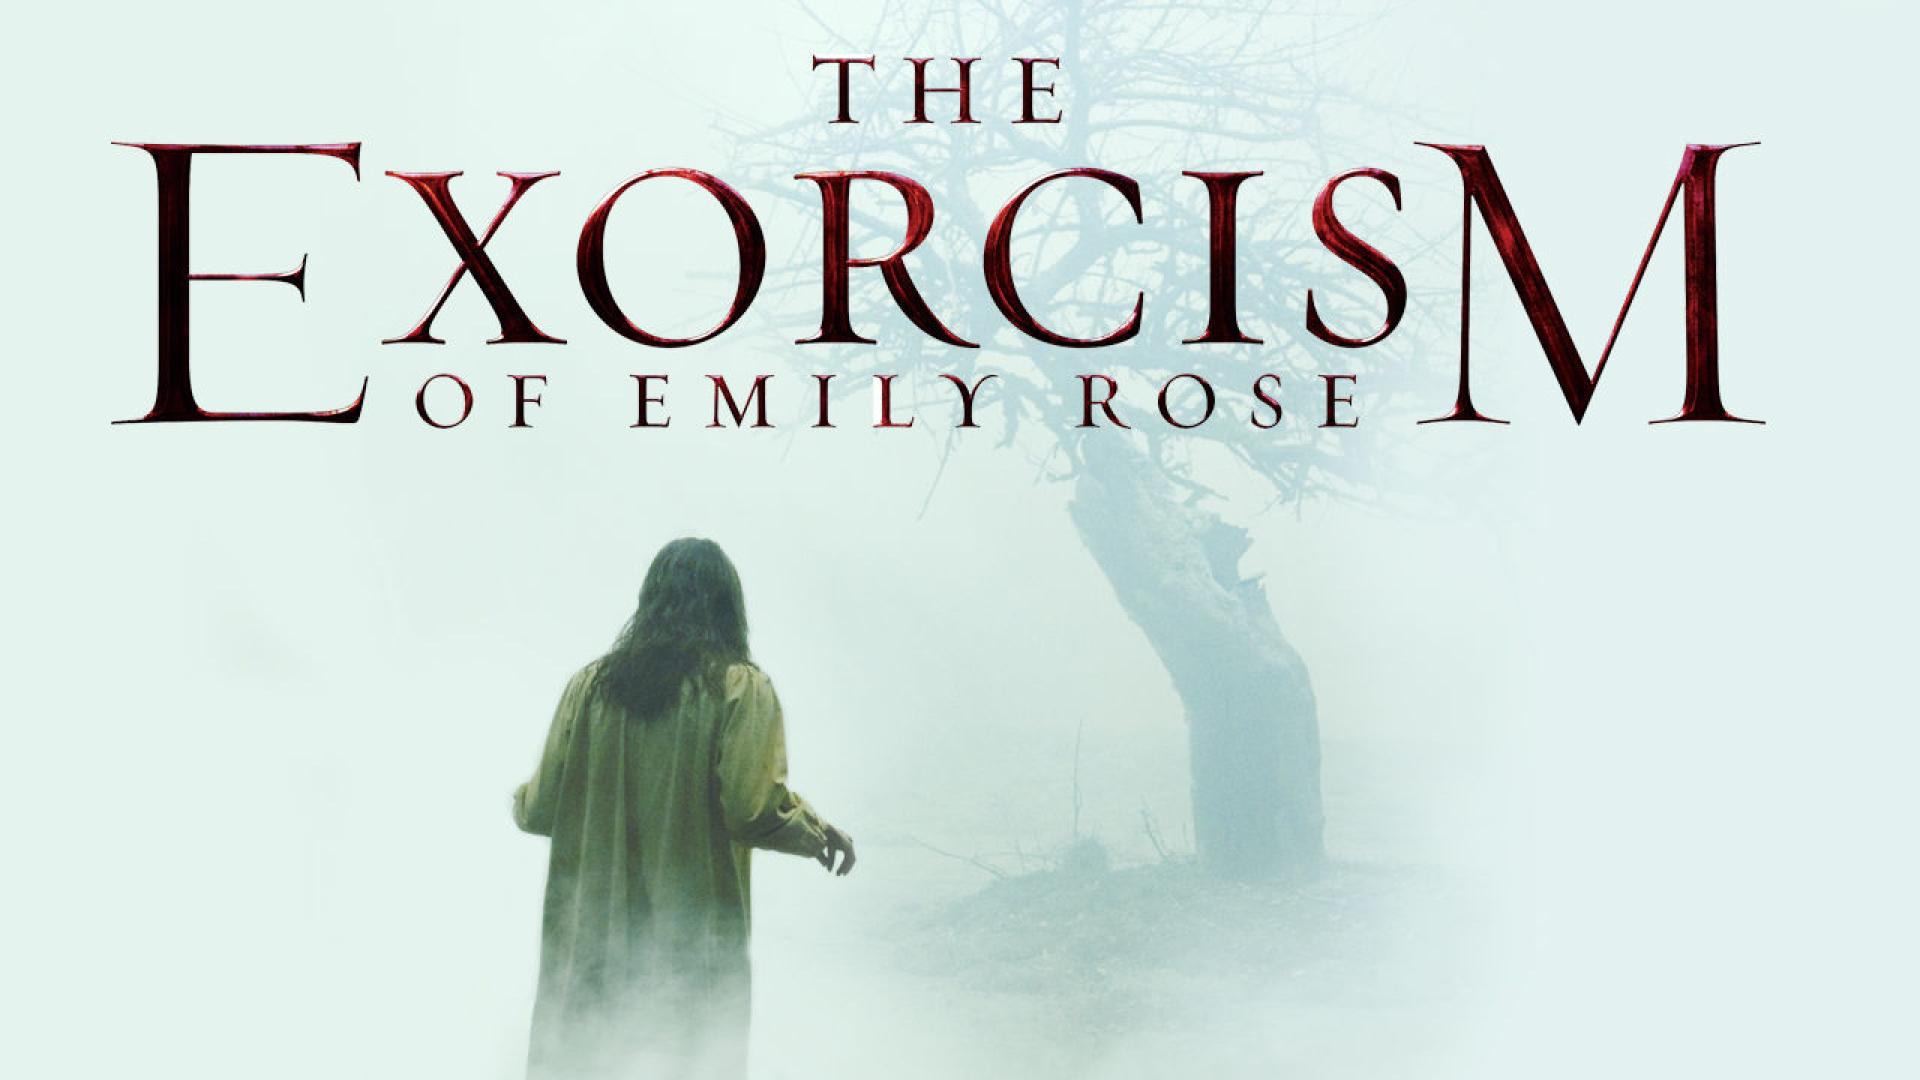 15 érdekesség az Ördögűzés Emily Rose üdvéért című filmről